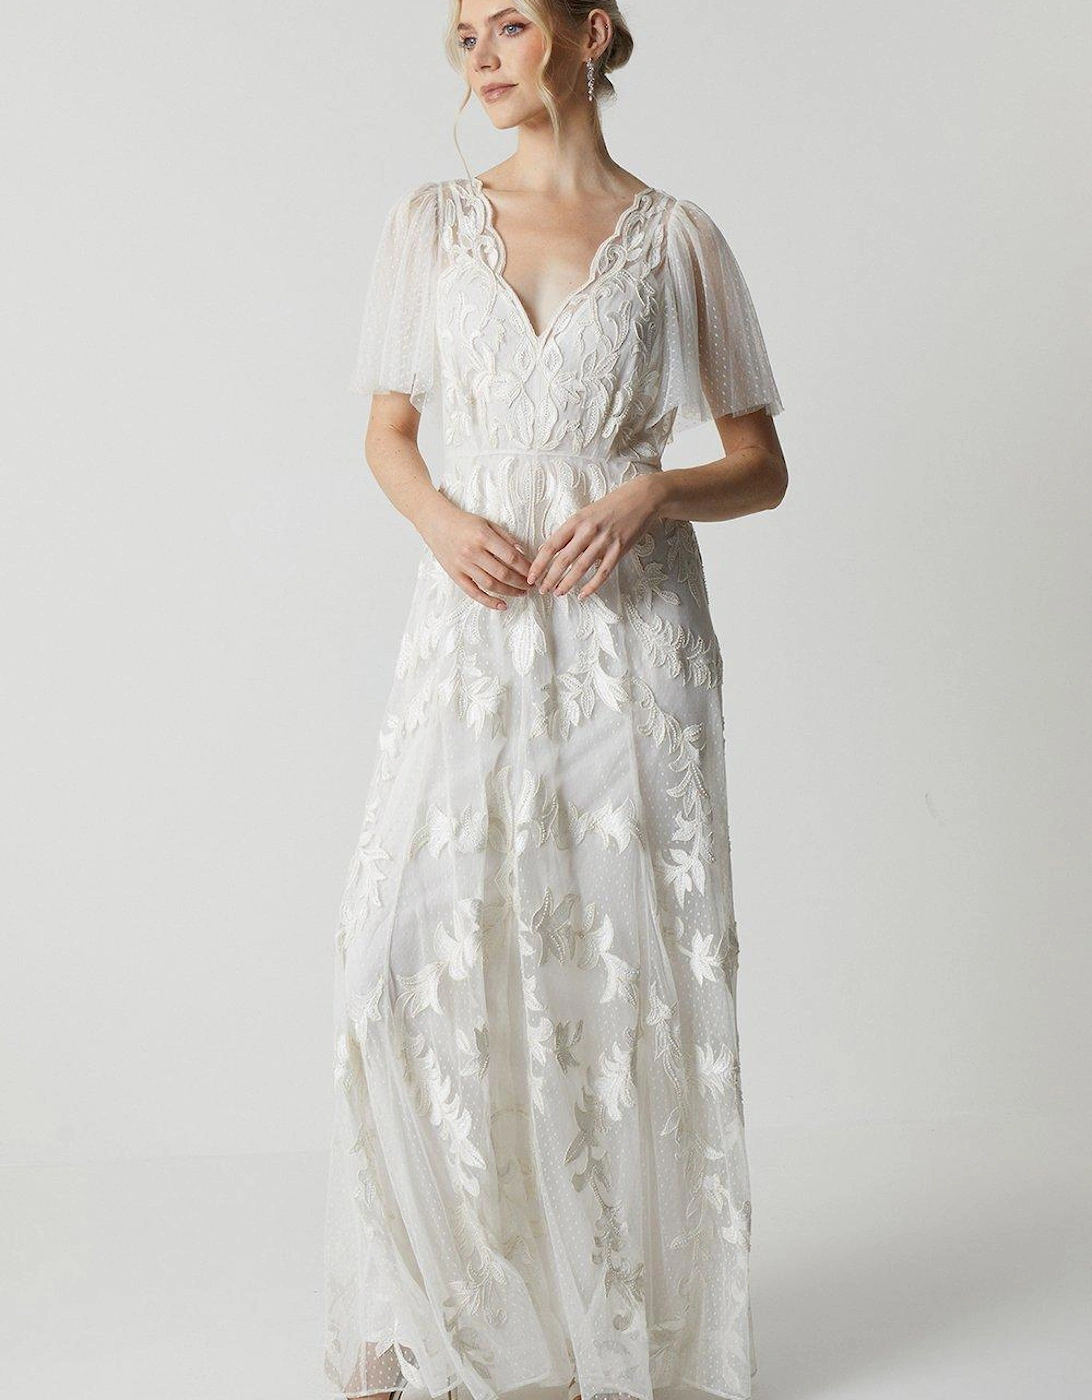 Premium Lace Overlay Embellished Wedding Dress, 2 of 1